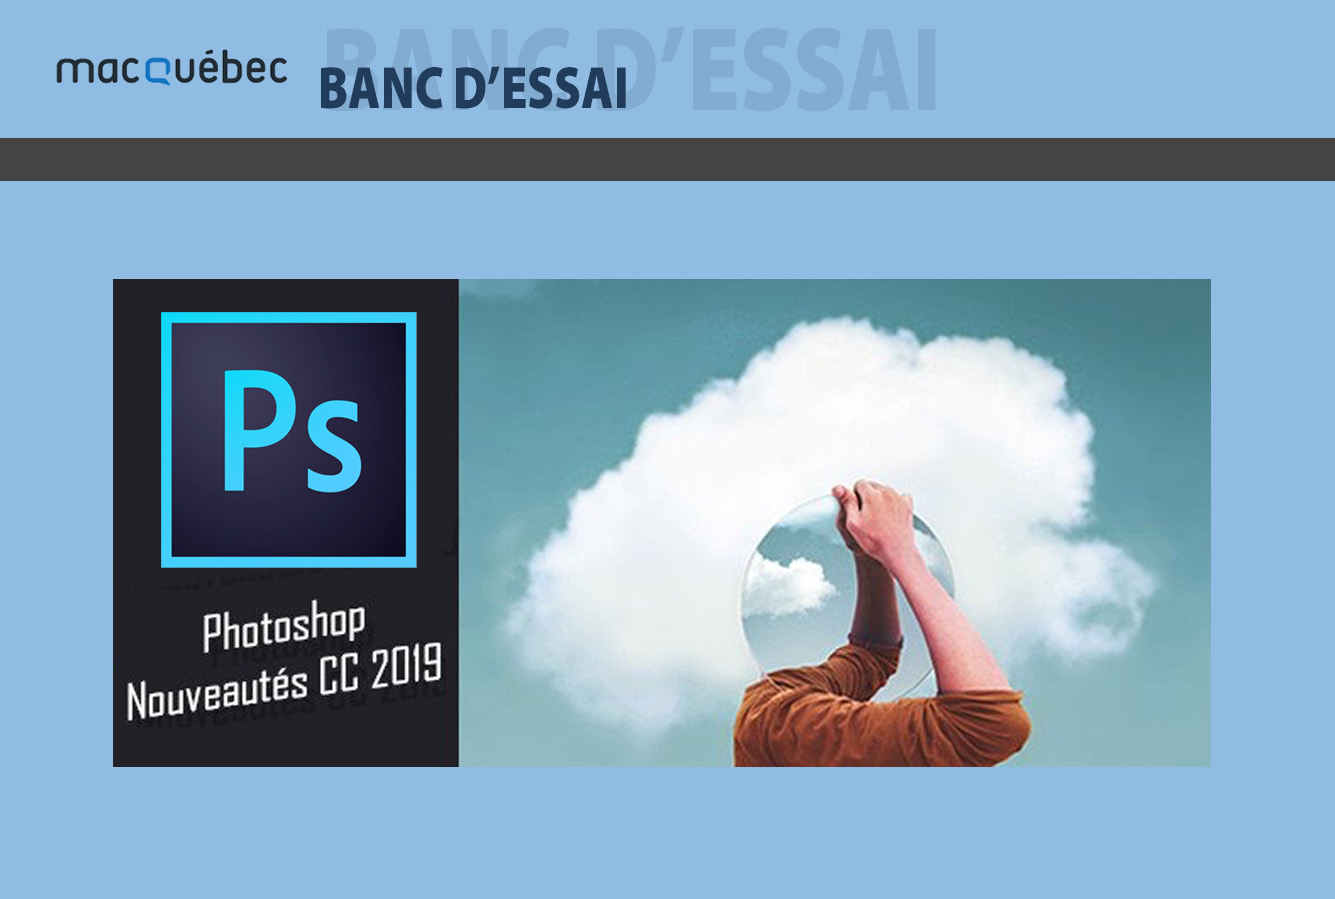 Image de l'article contient le logo du logiciel Photoshop et l'illustration de cette version récente